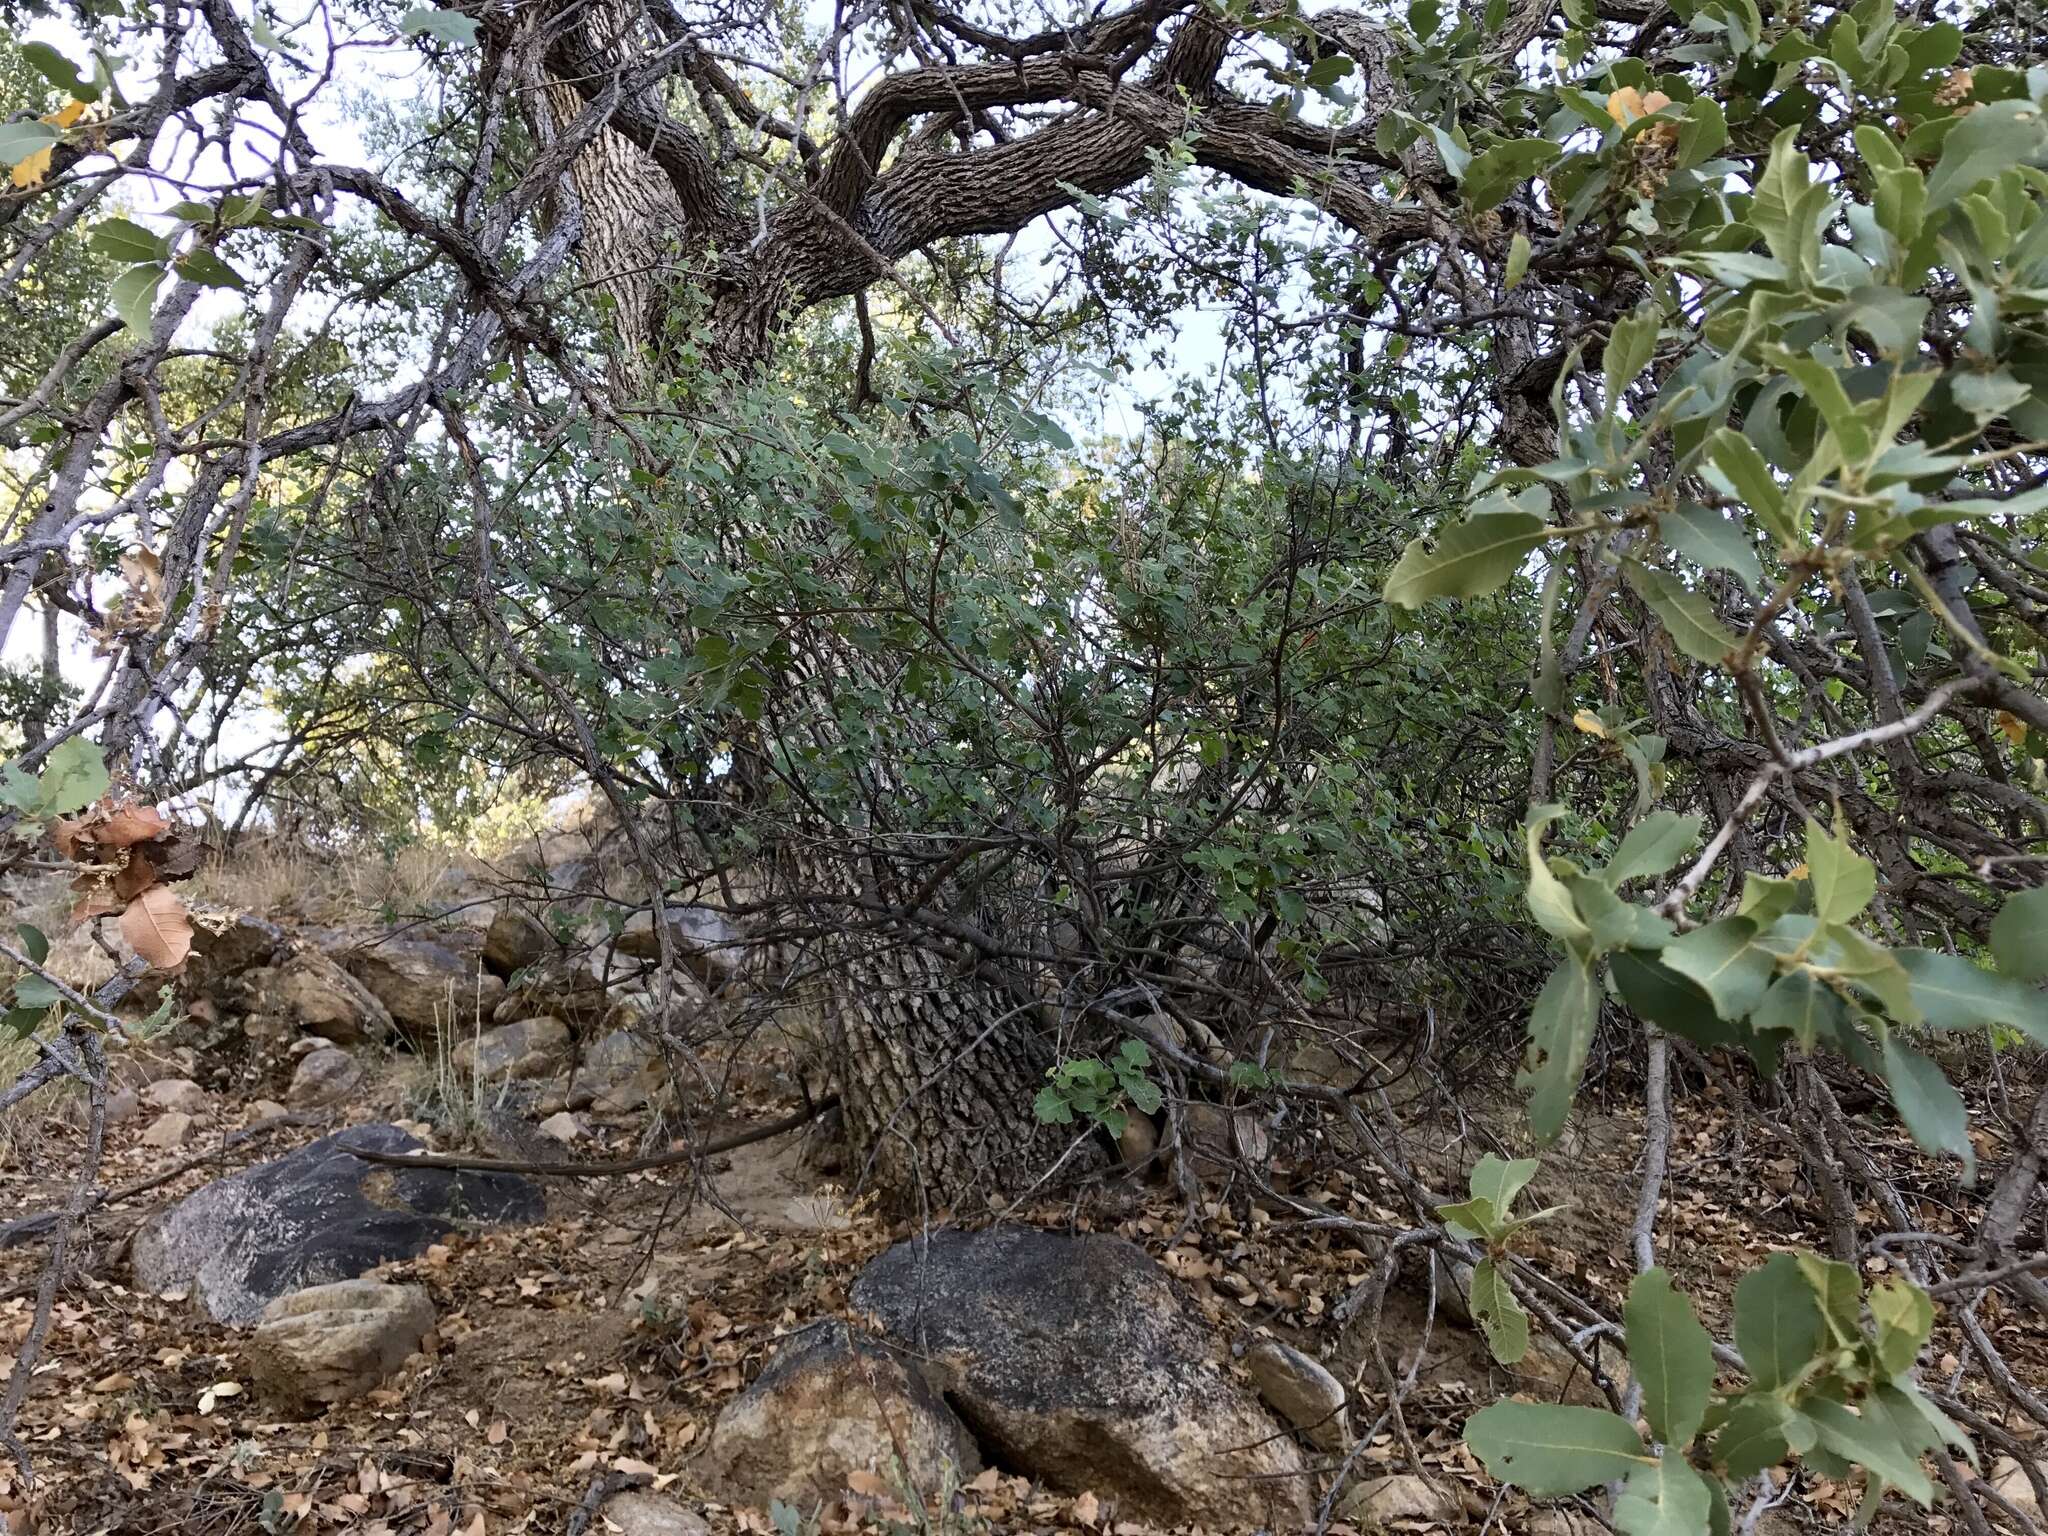 Image of Arizona White Oak